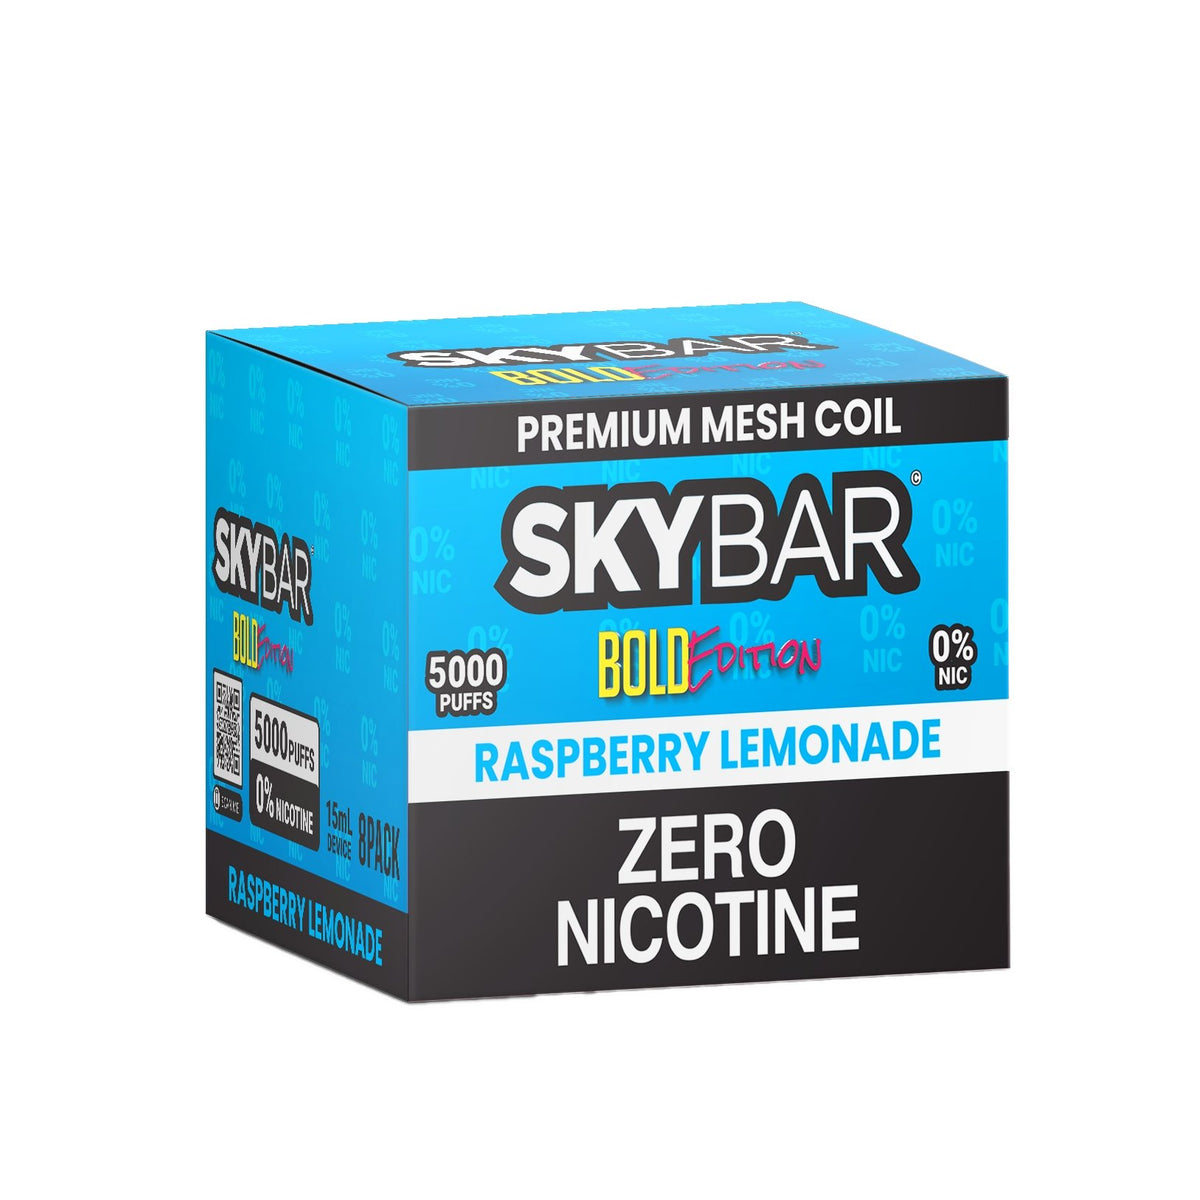 SKYBAR BOLD 5000 PUFFS 0% Nic 8ct BOX - Skybar